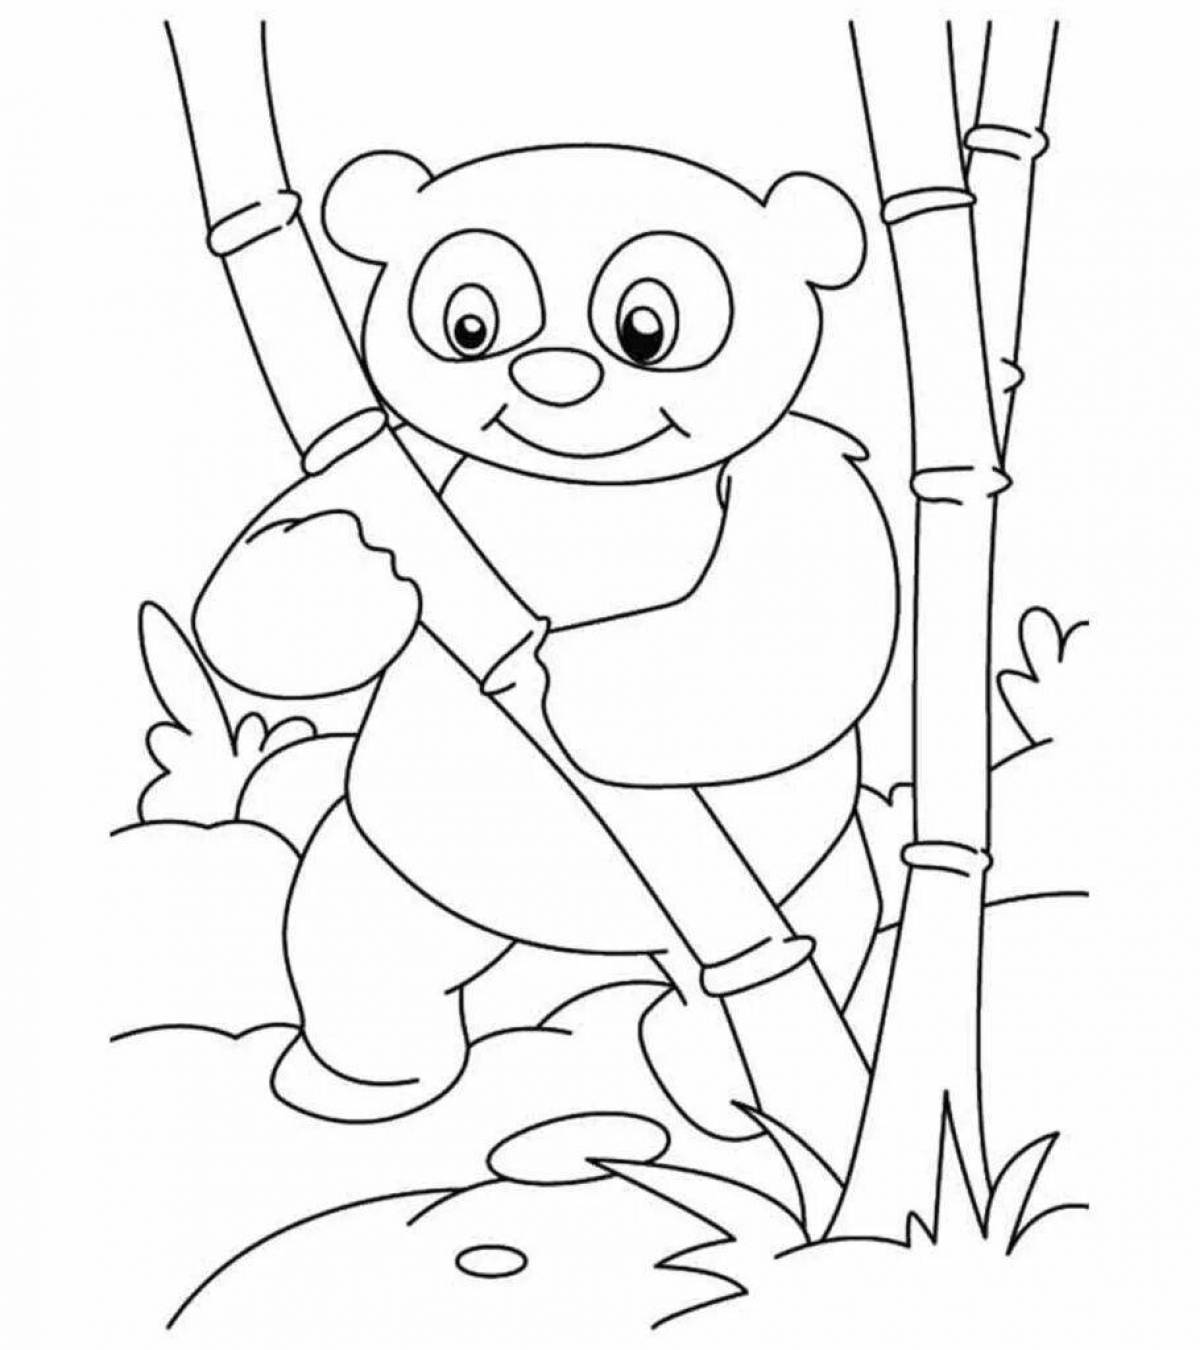 A fun panda coloring book for kids